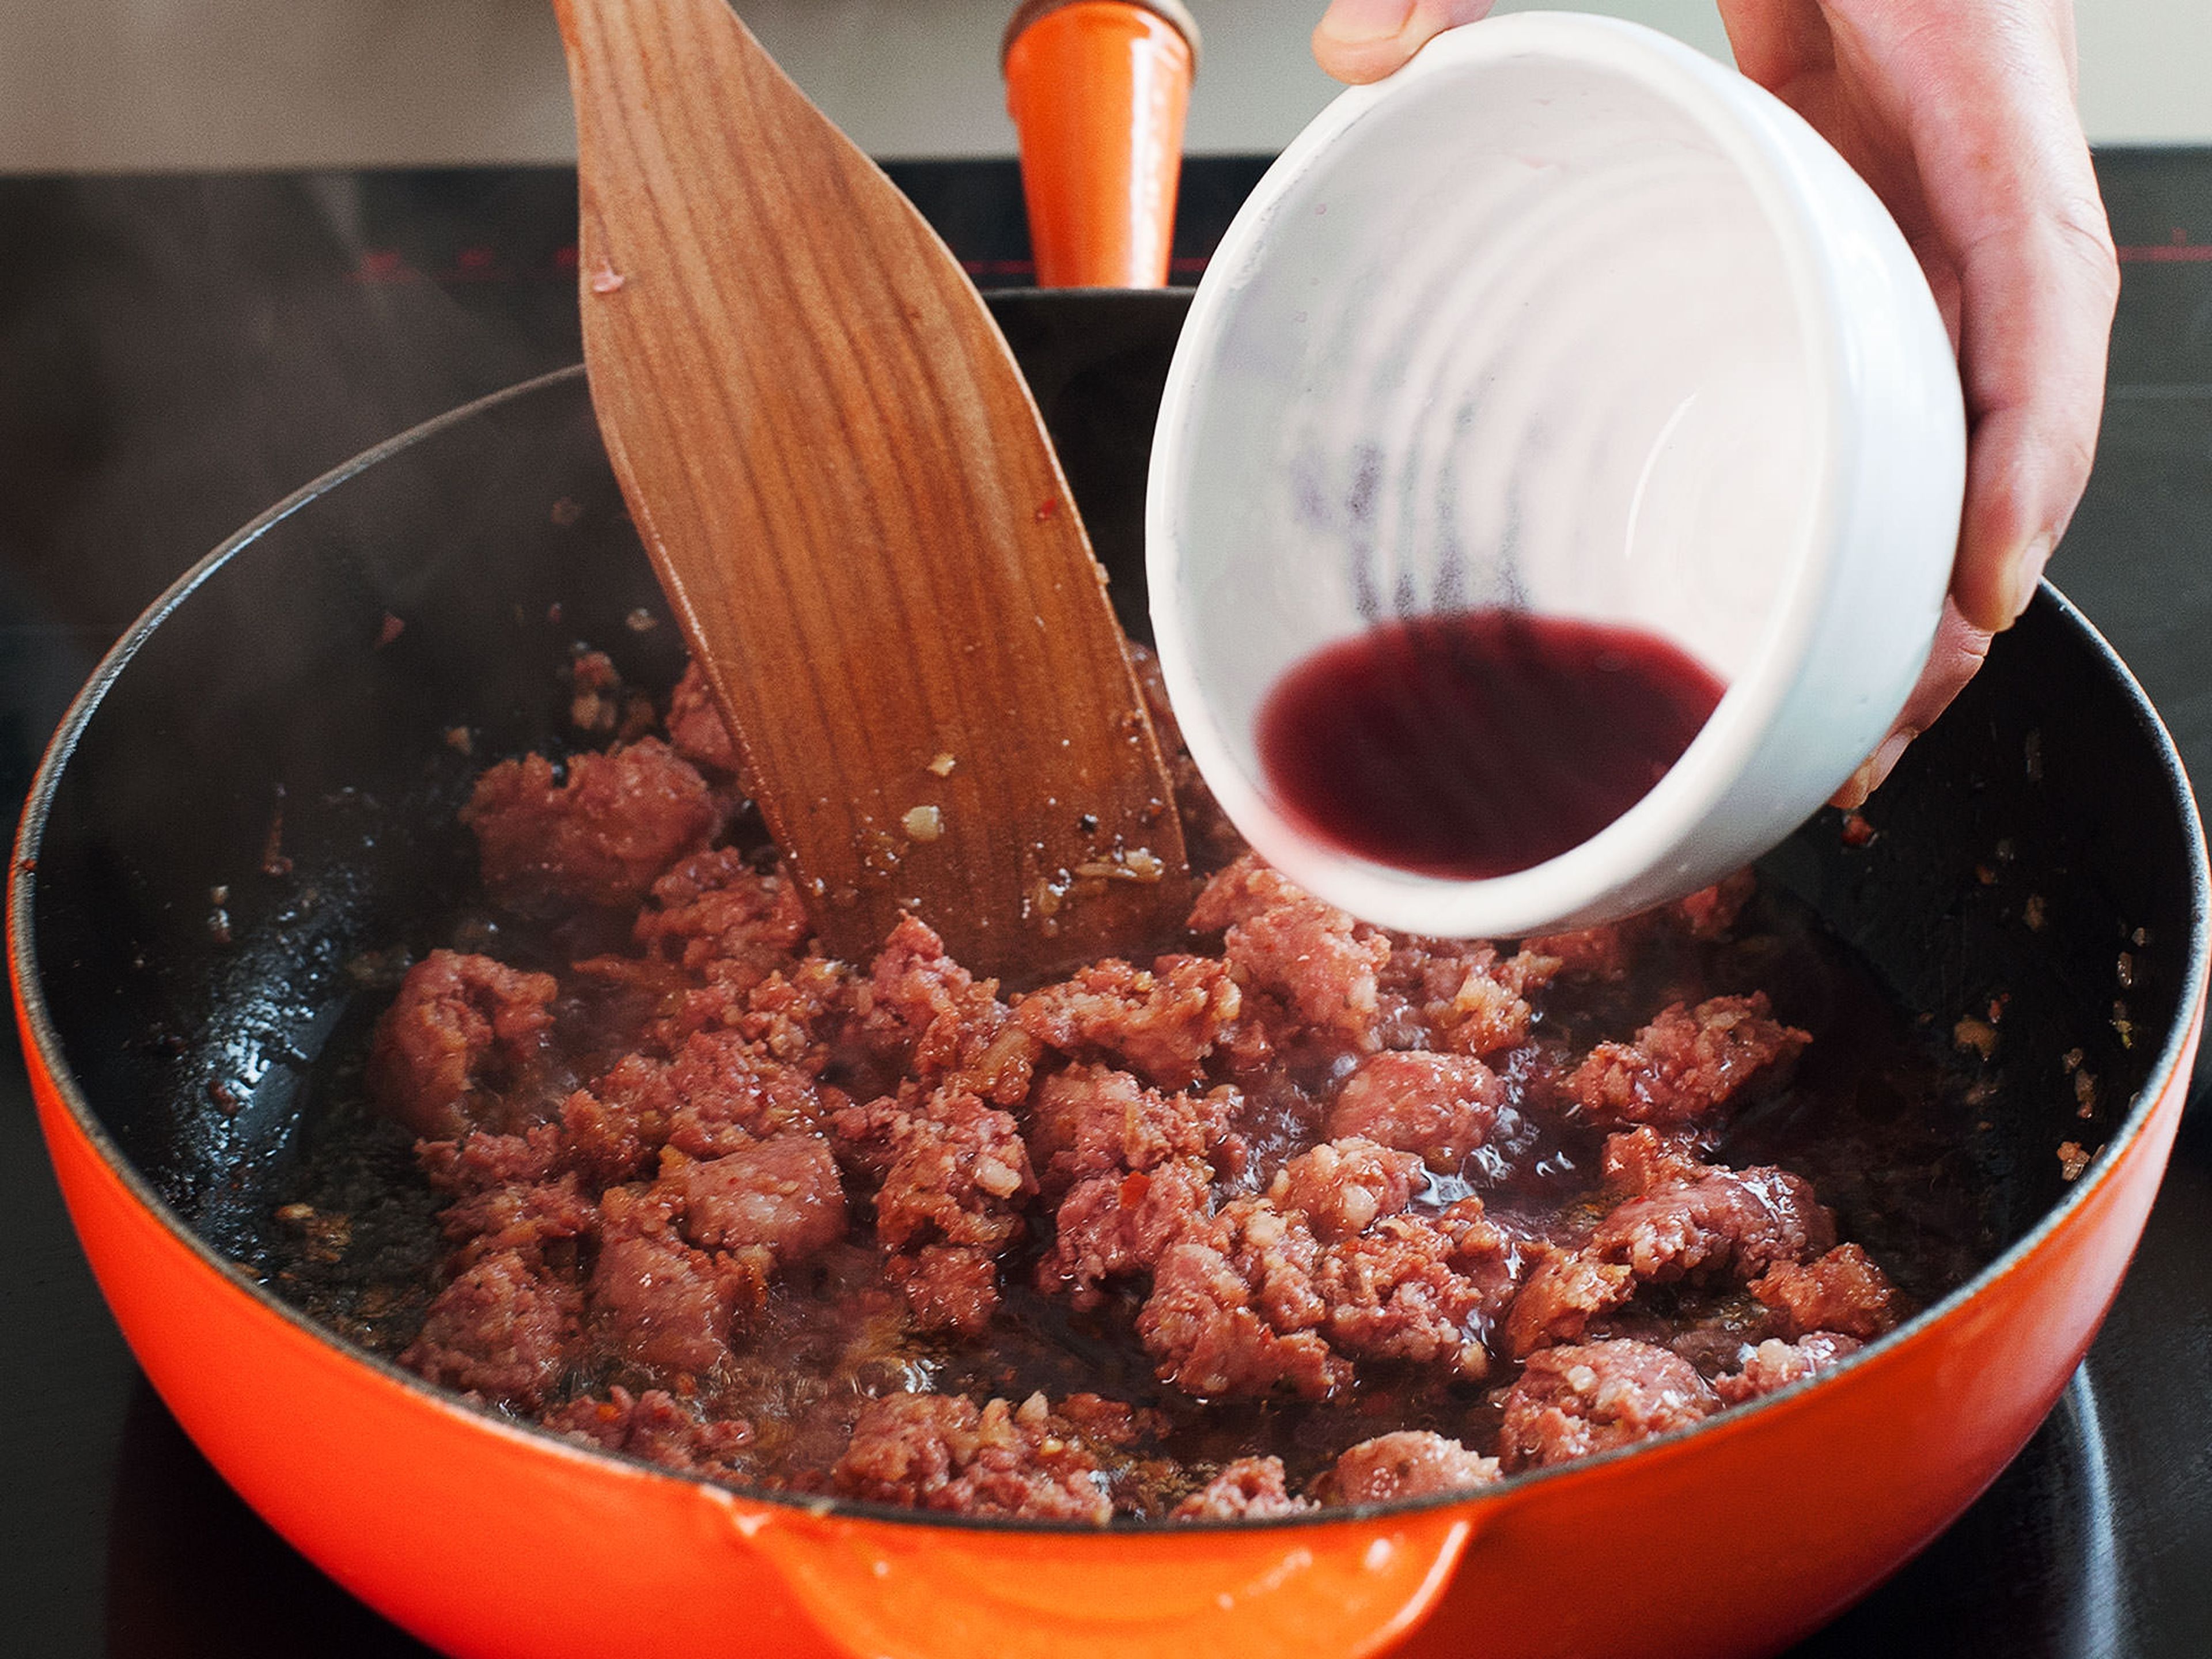 Mit Rotwein ablöschen und mit dem Kochlöffel die Röststoffe vom Pfannenboden lösen. Nach weiteren 2 - 3 Min. passierte Tomaten hinzugeben und mit Salz und Pfeffer würzen. Für weitere 5 - 10 Min. kochen lassen.